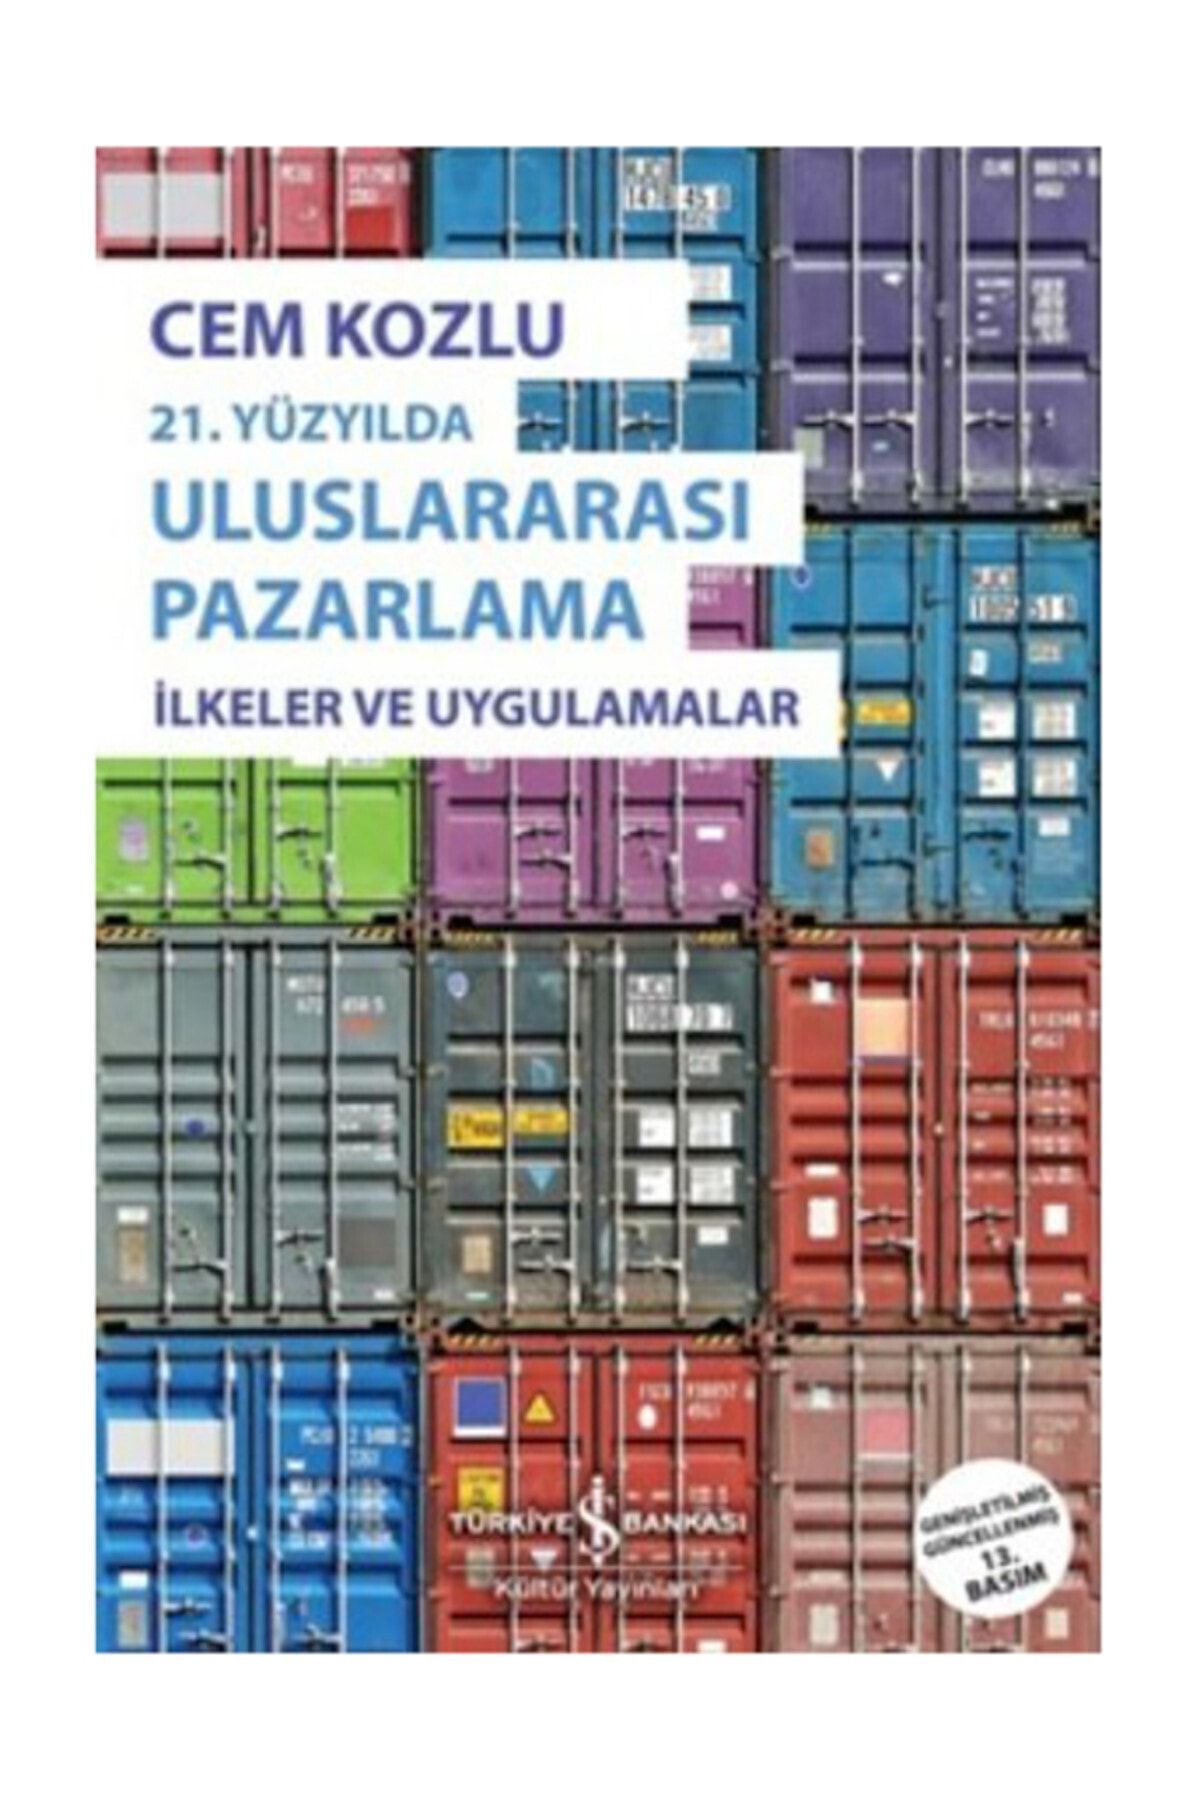 Türkiye İş Bankası Kültür Yayınları Uluslararası Pazarlama Cem Kozlu - Cem Kozlu,hüseyin Karaca